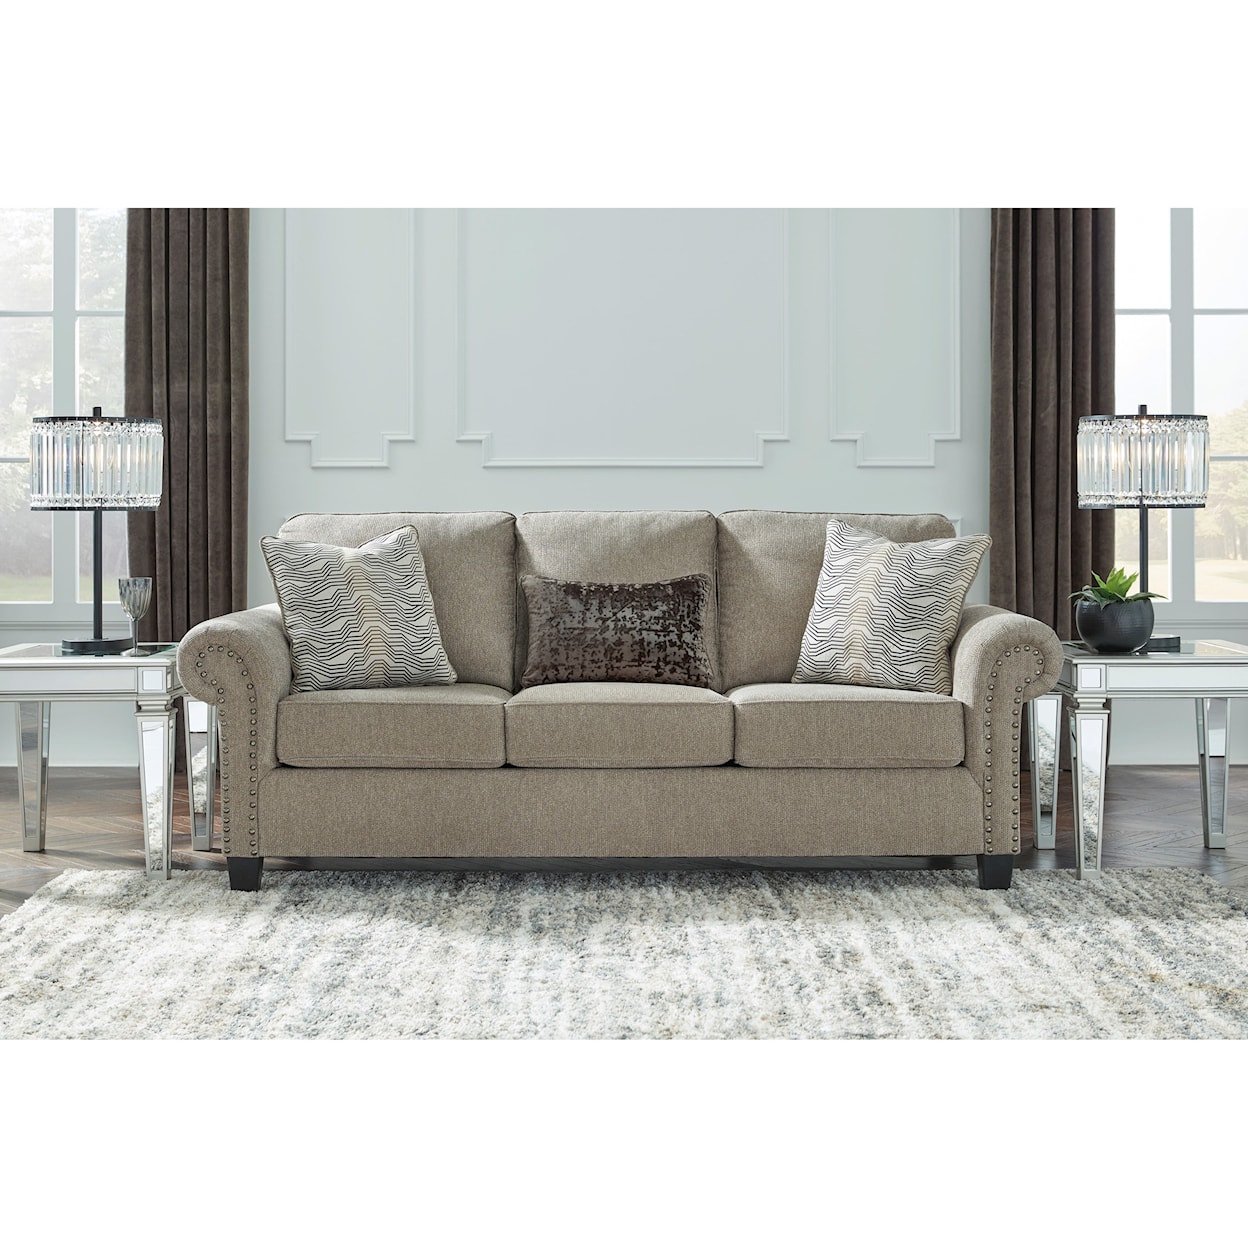 Ashley Furniture Benchcraft Shewsbury Sofa